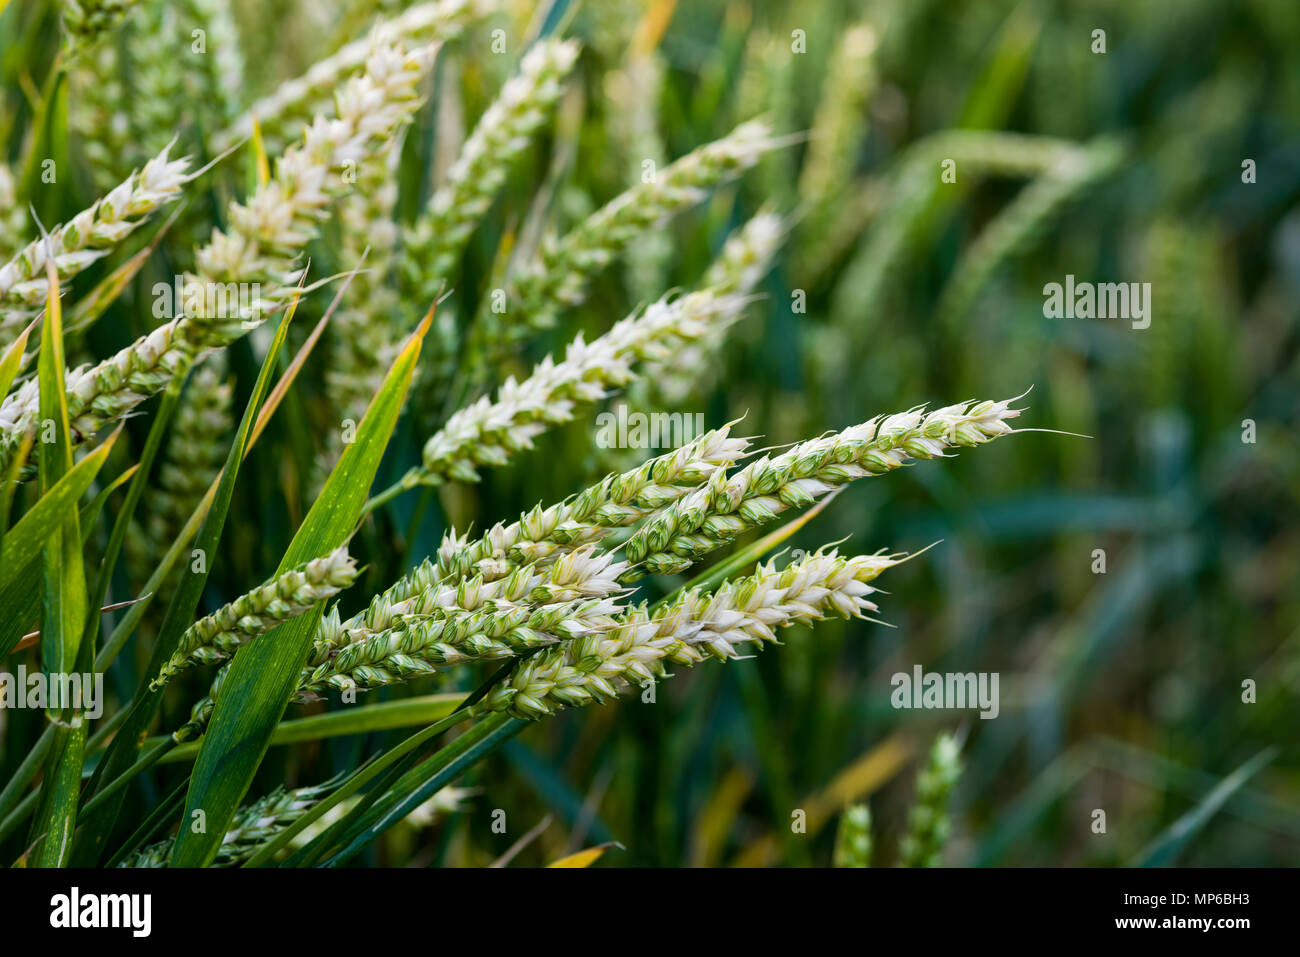 Ears of wheat growing in a field. Stock Photo